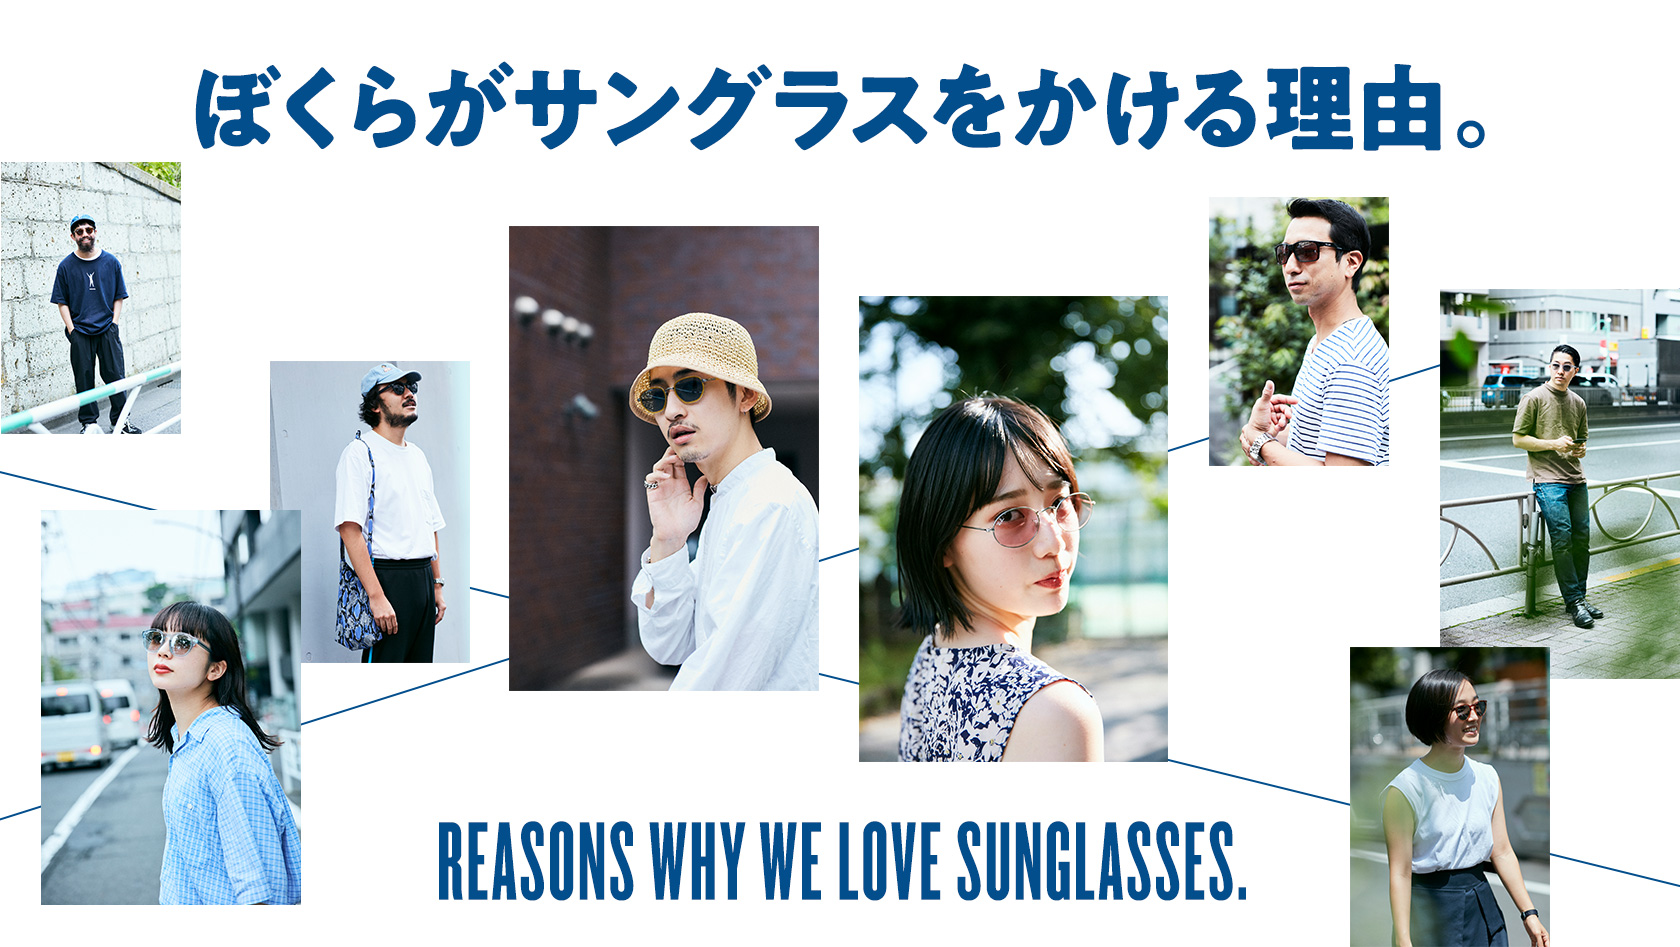 ぼくらがサングラスをかける理由。| HOUYHNHNM SUNGLASSES CLUB